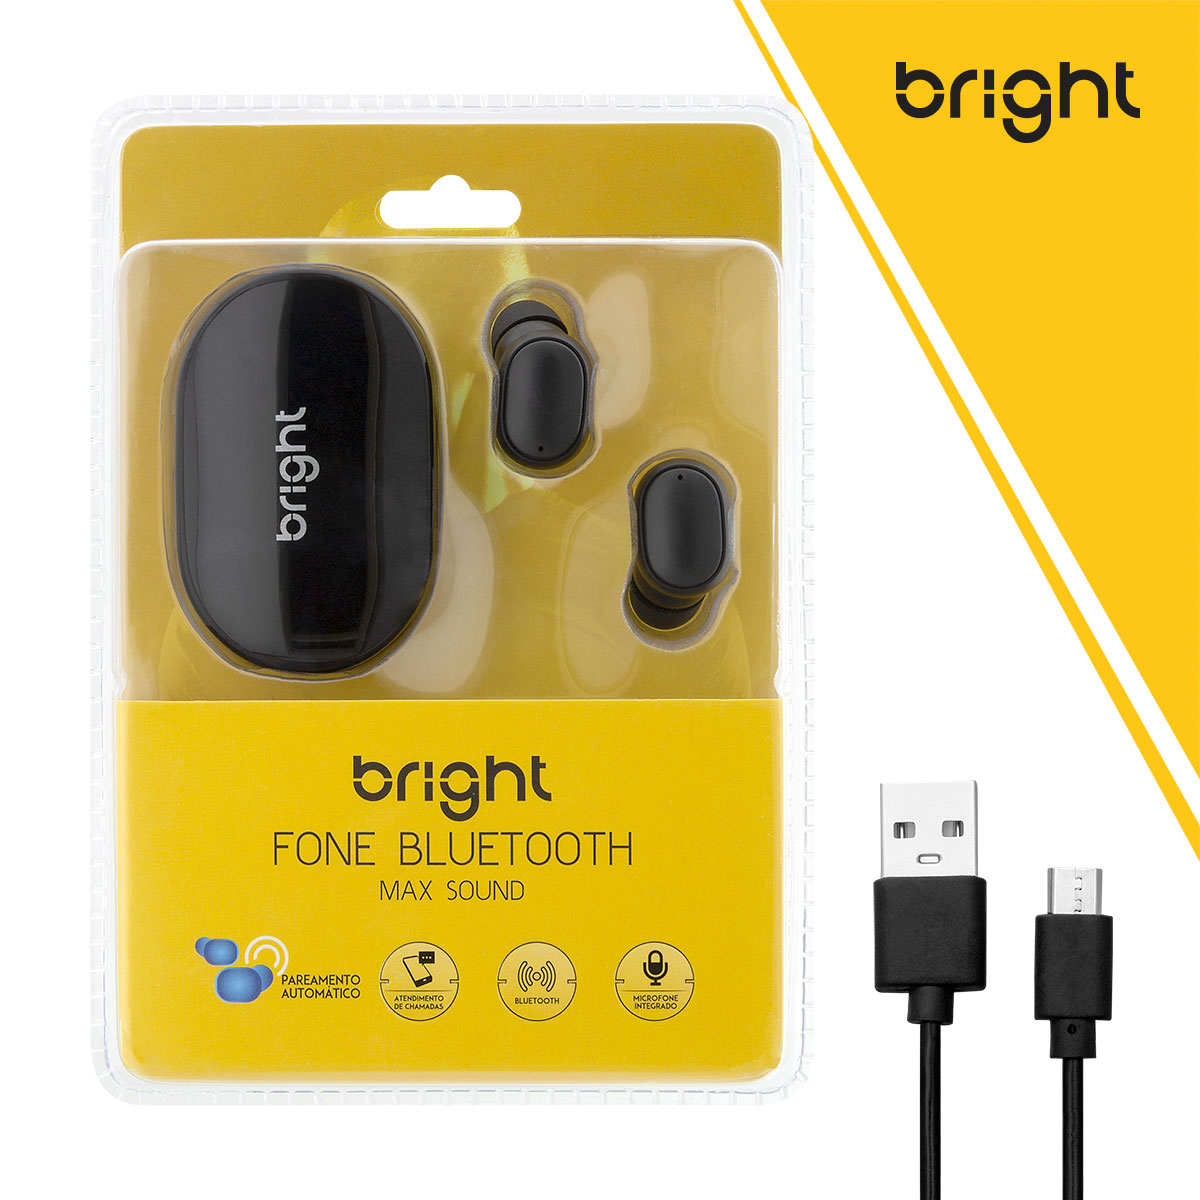 Fone de Ouvido Bluetooth TWS Max Sound Bright FN570  - BRIGHT